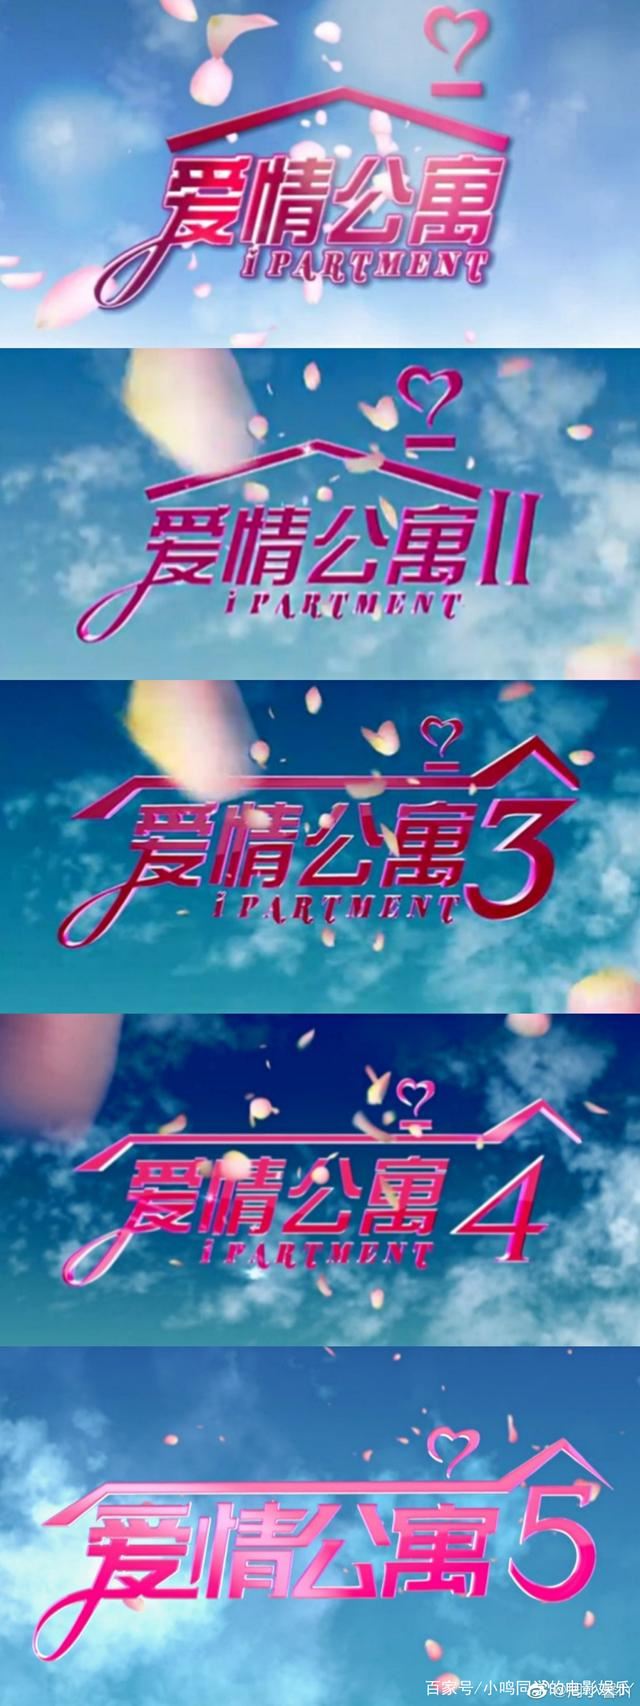 爱情公寓5季全 4K+番外篇+大电影合集免费下载